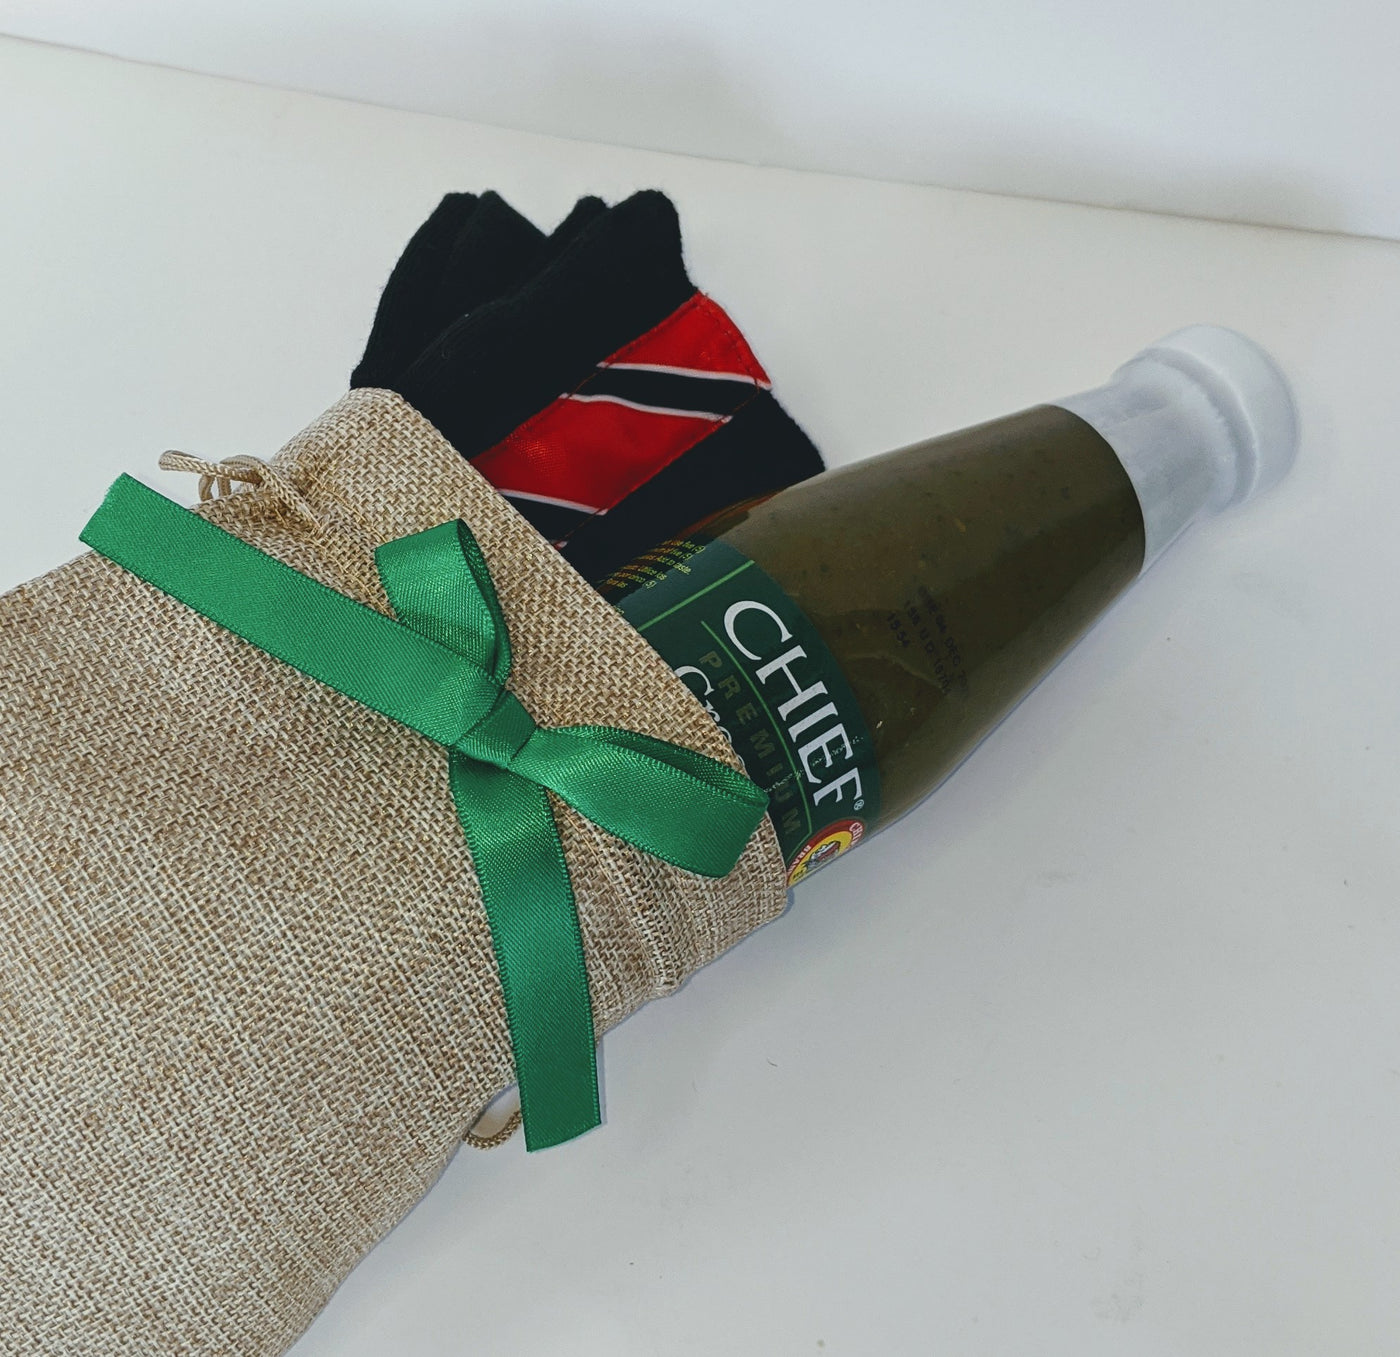 Caribbean Sauce & Socks Gift Set